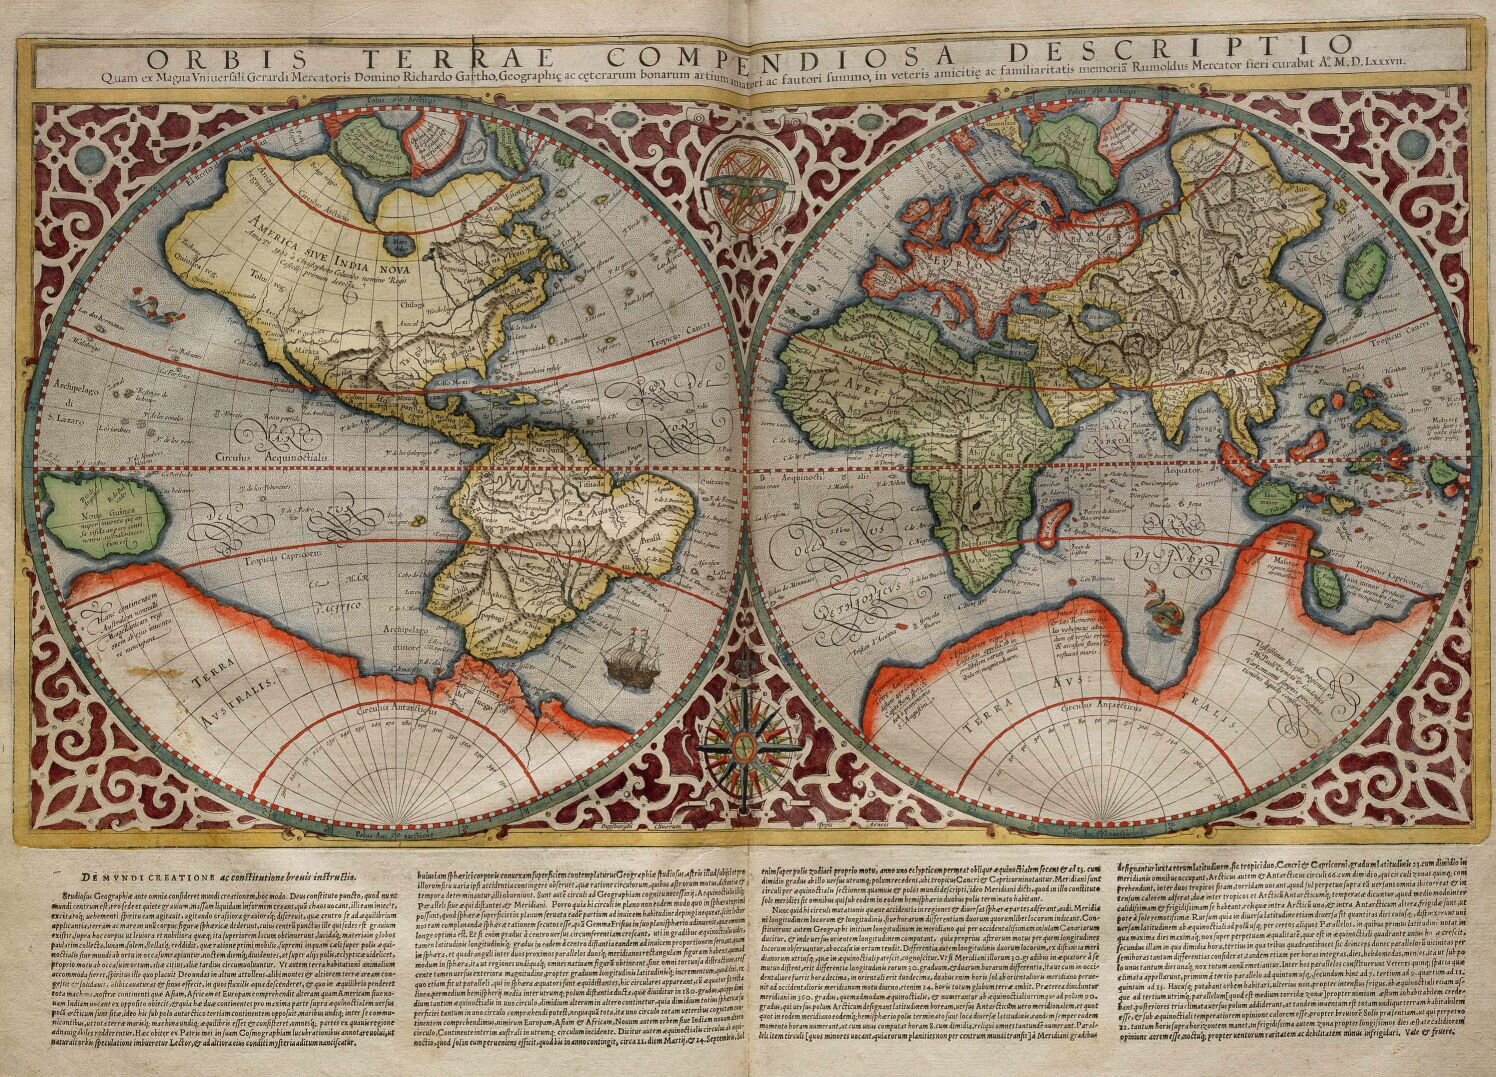 Na zdjęciu przedstawiona została mapa świata z XVI wieku po odkryciach geograficznych. Na dwóch półkulach widoczne kontynenty, m.in.: Azja, Europa, Afryka. Zaznaczone także koła podbiegunowe. Na jednej z półkul namalowany statek. Nad mapą łaciński napis: Orbis Terrae Compendiosa Descriptio. Całość półkul otoczona ornamentem. U dołu napisy. 